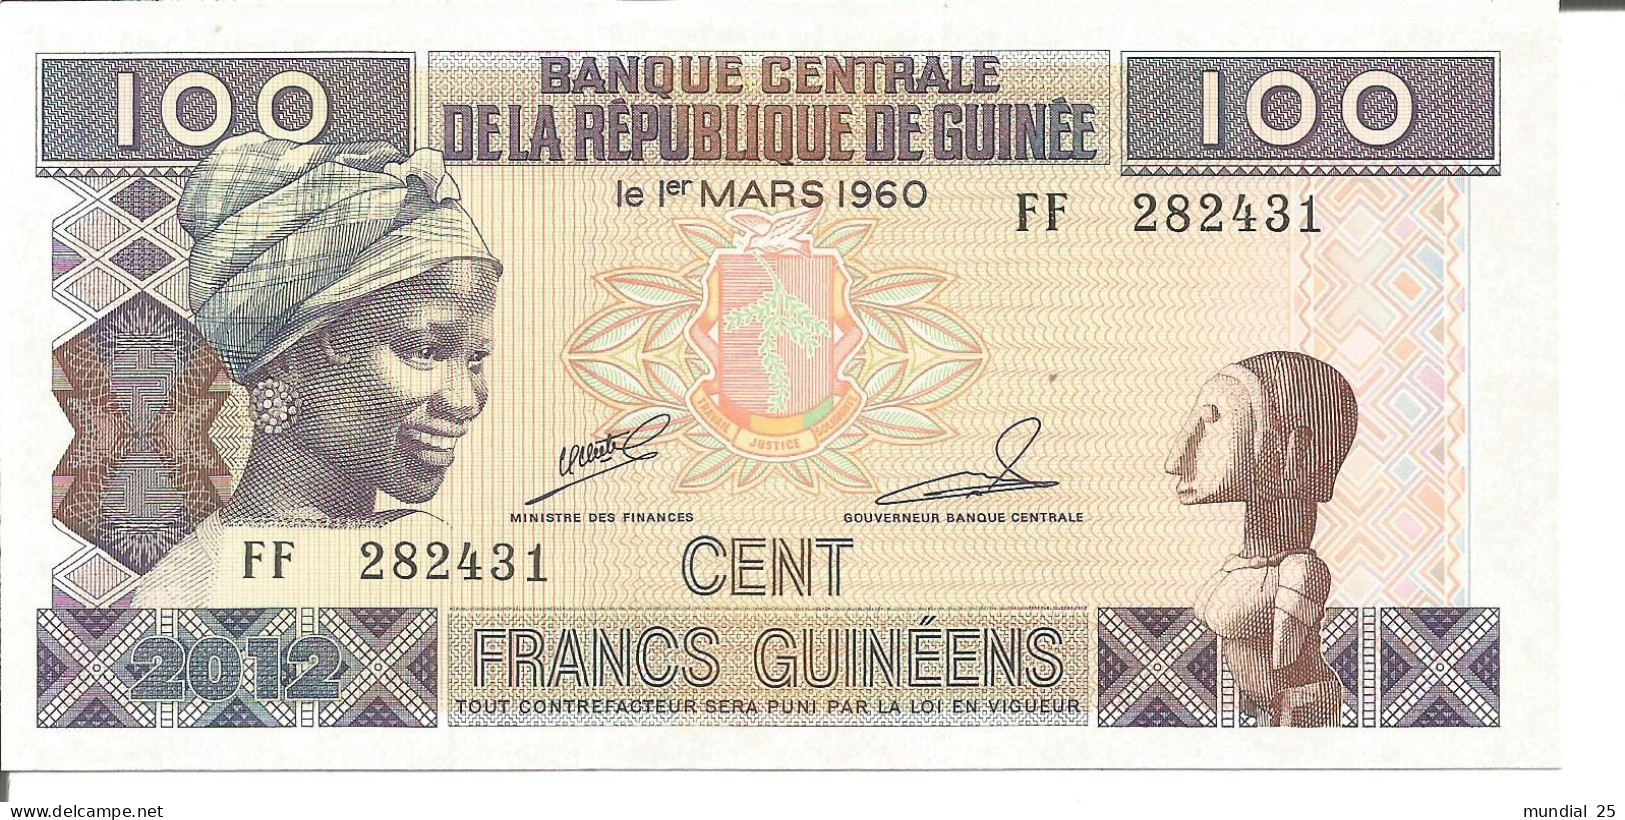 3 GUINEA NOTES 100 FRANCS GUINÉENS 2012 - Guinée